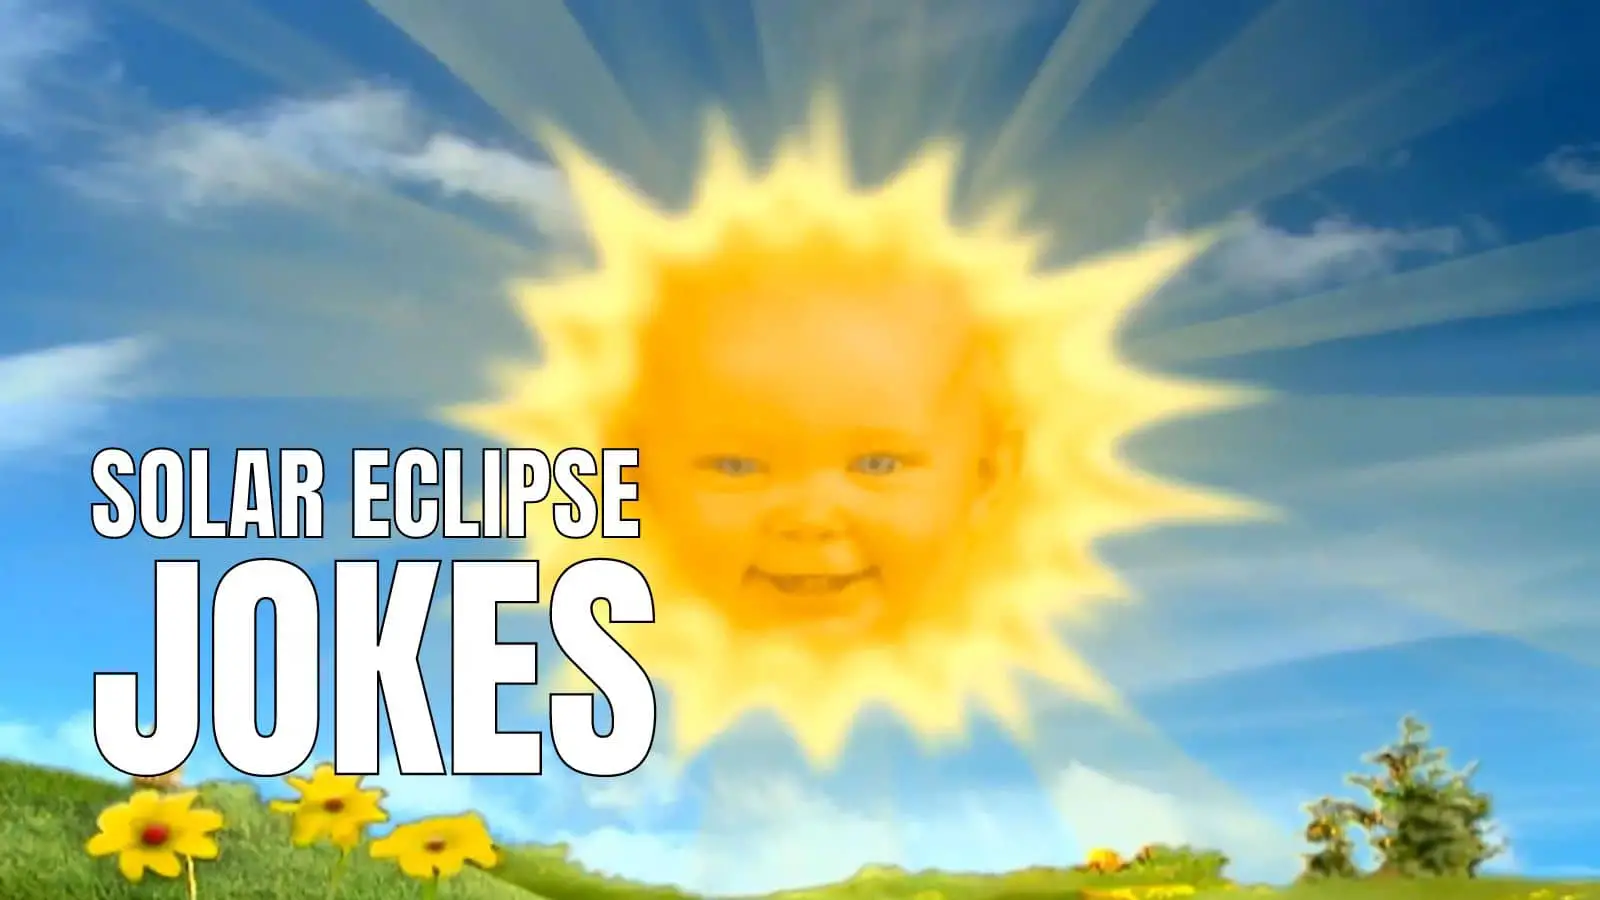 Funny Solar Eclipse Jokes on Sun